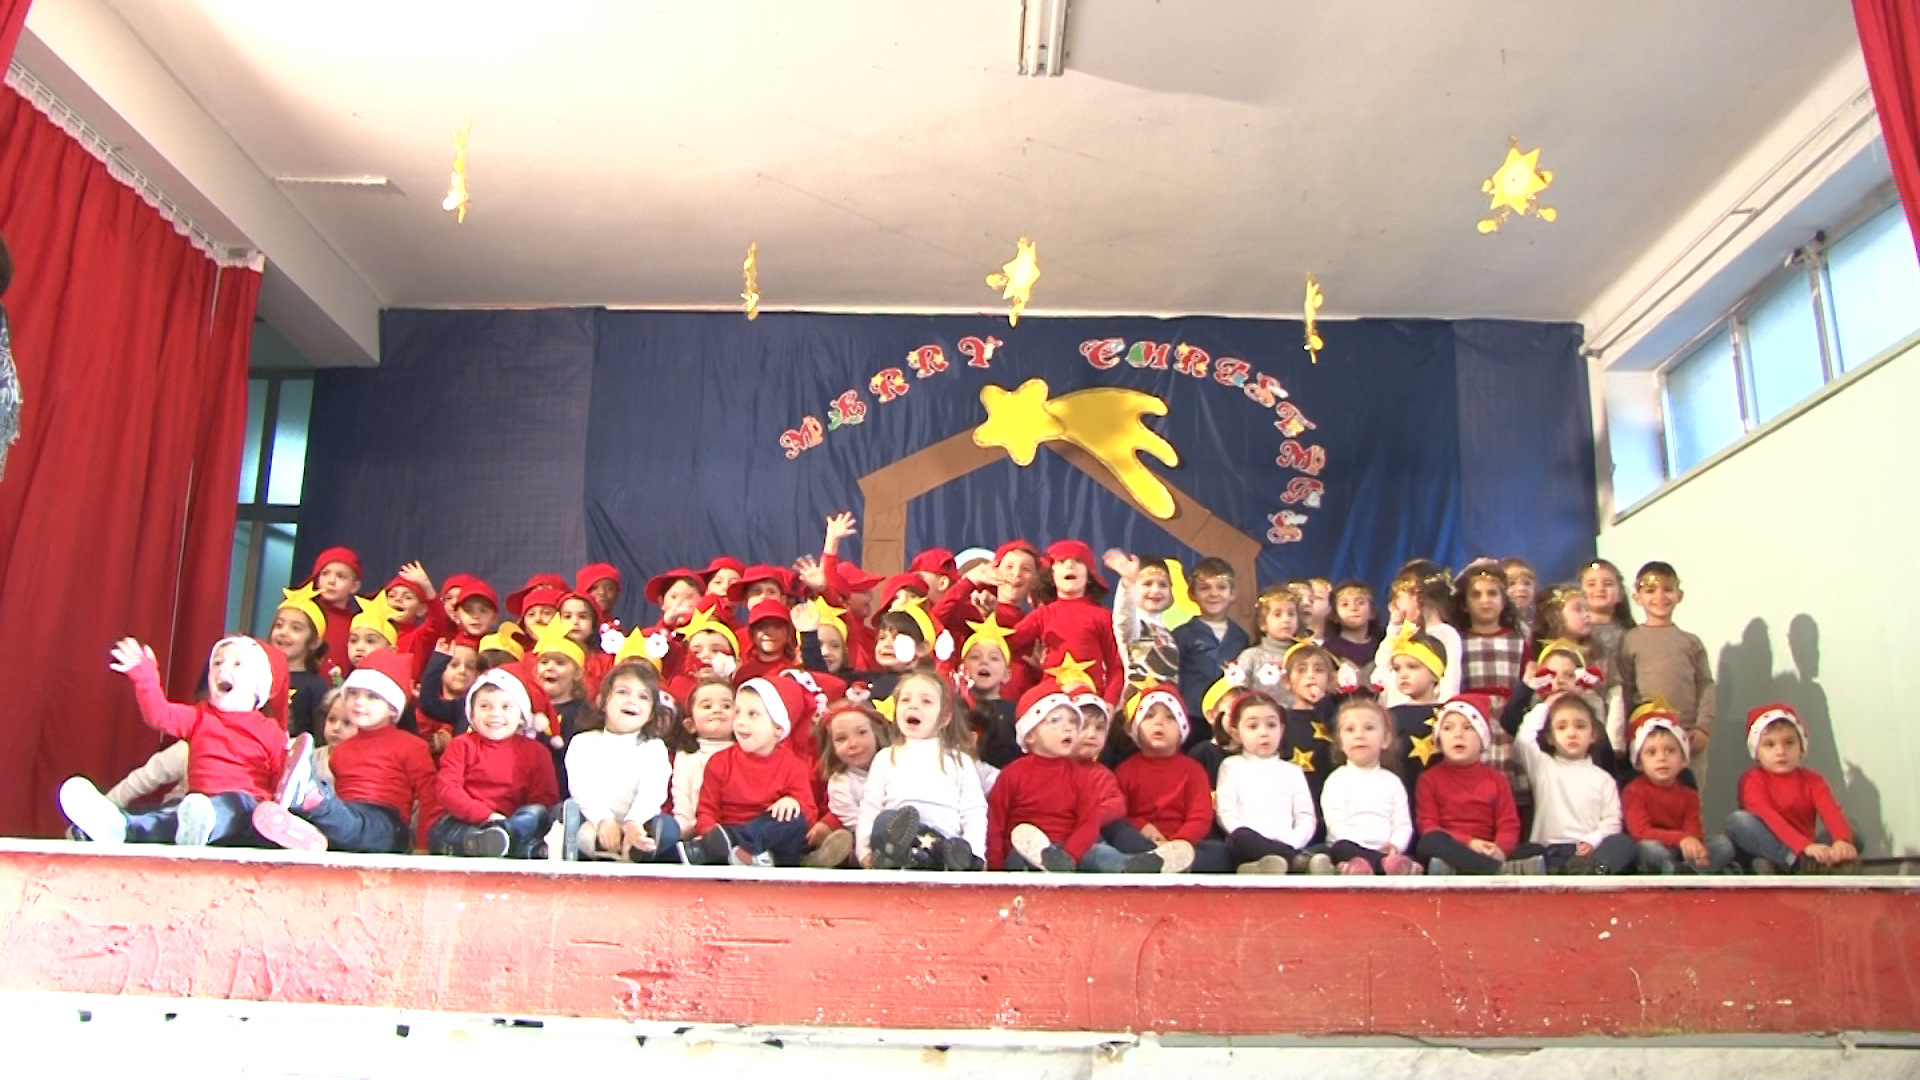 Recita Di Natale.Piccoli Attori Crescono Recita Di Natale Della Scuola E Pistelli Di Pianura Video Report Campania Report Campania